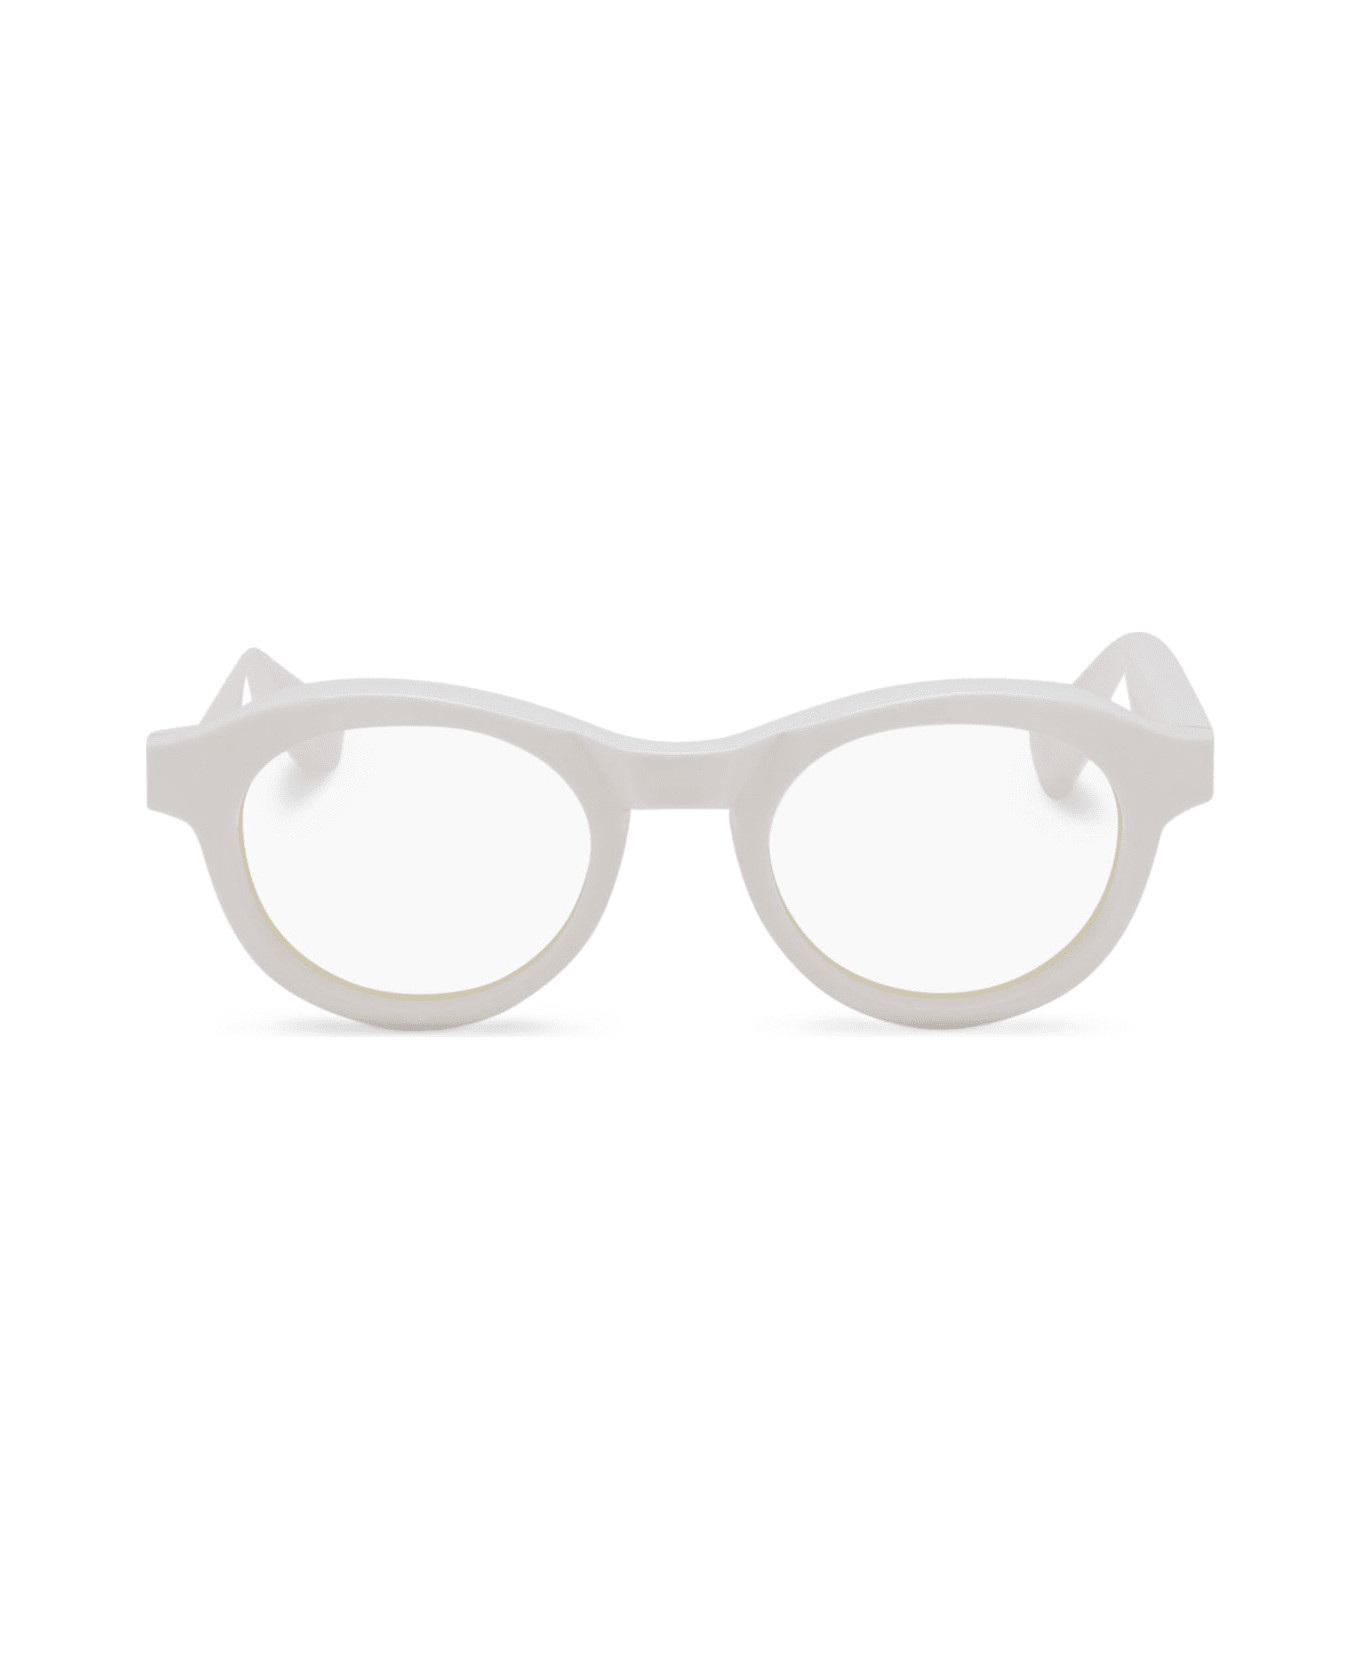 FACTORY900 Rf 007-853 Glasses - White